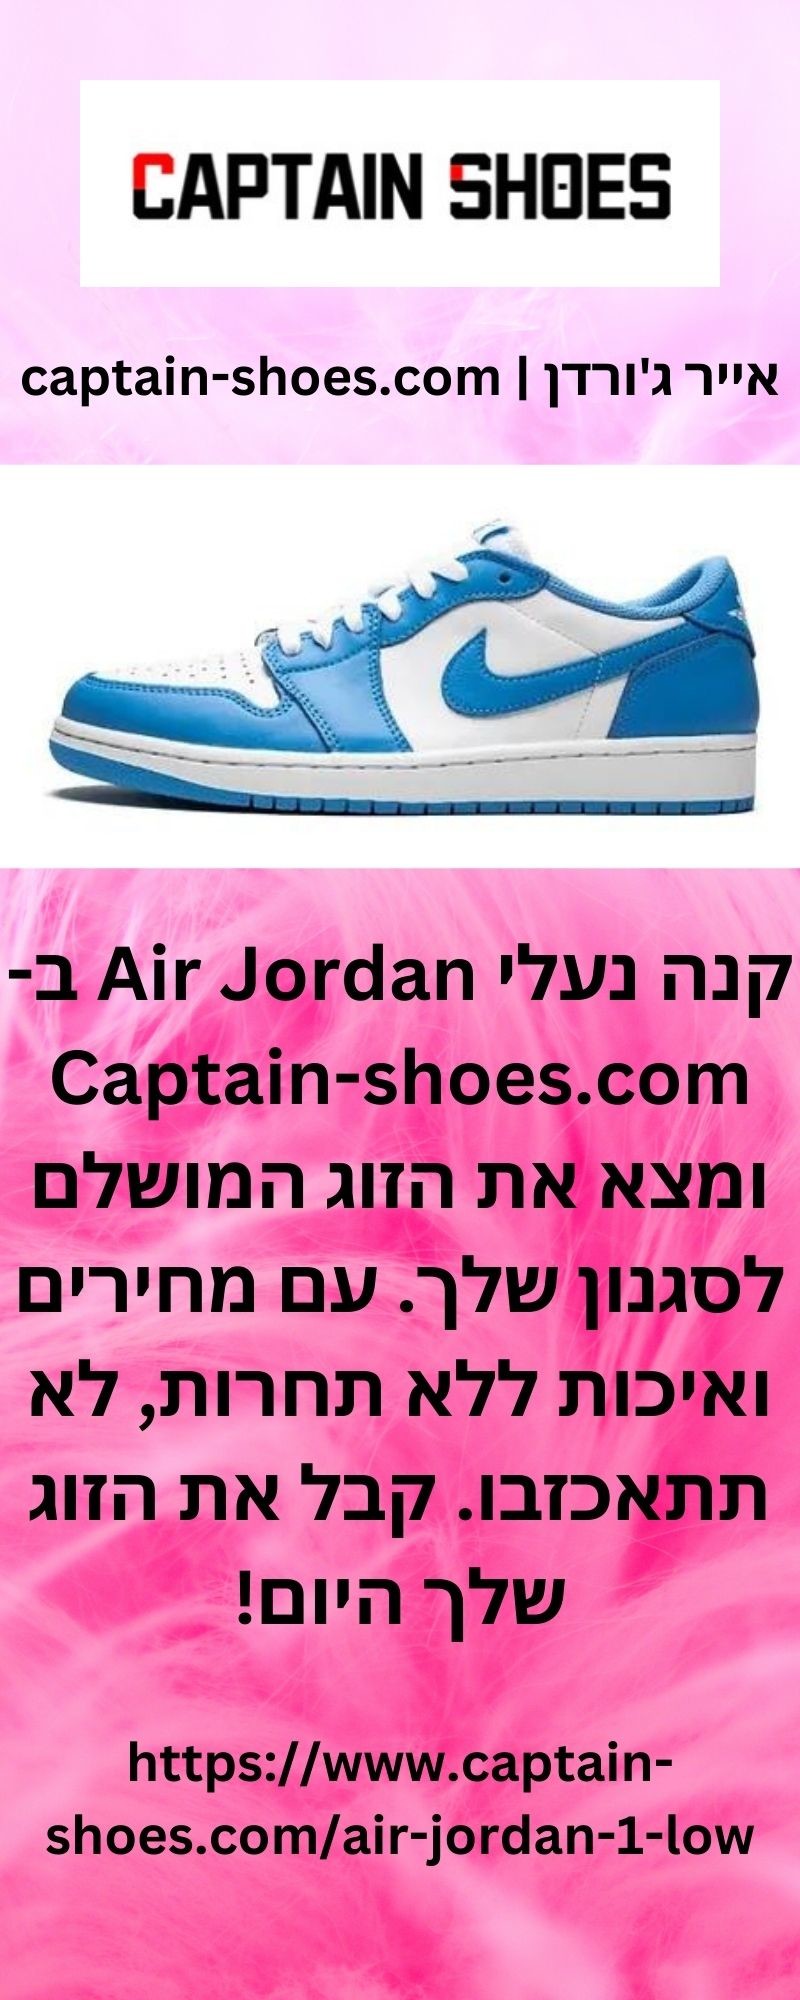 CAPTAIN SHOES: "אייר ג'ורדן | captain-shoes.com  קנה נעלי Air Jor…" - mastodon.cloud